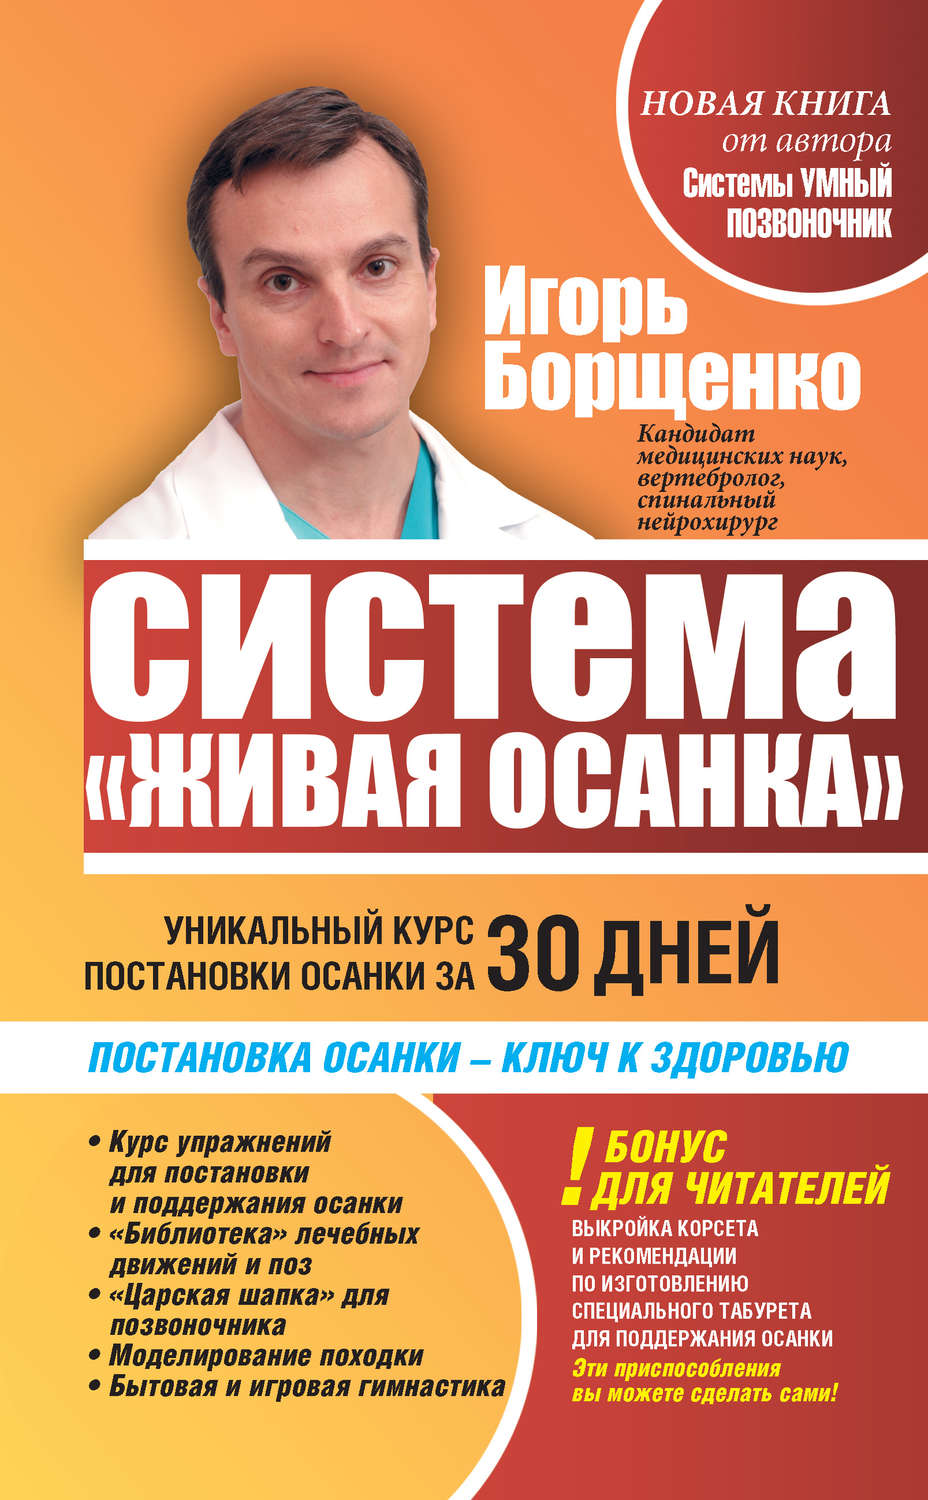 Книги борщенко скачать бесплатно